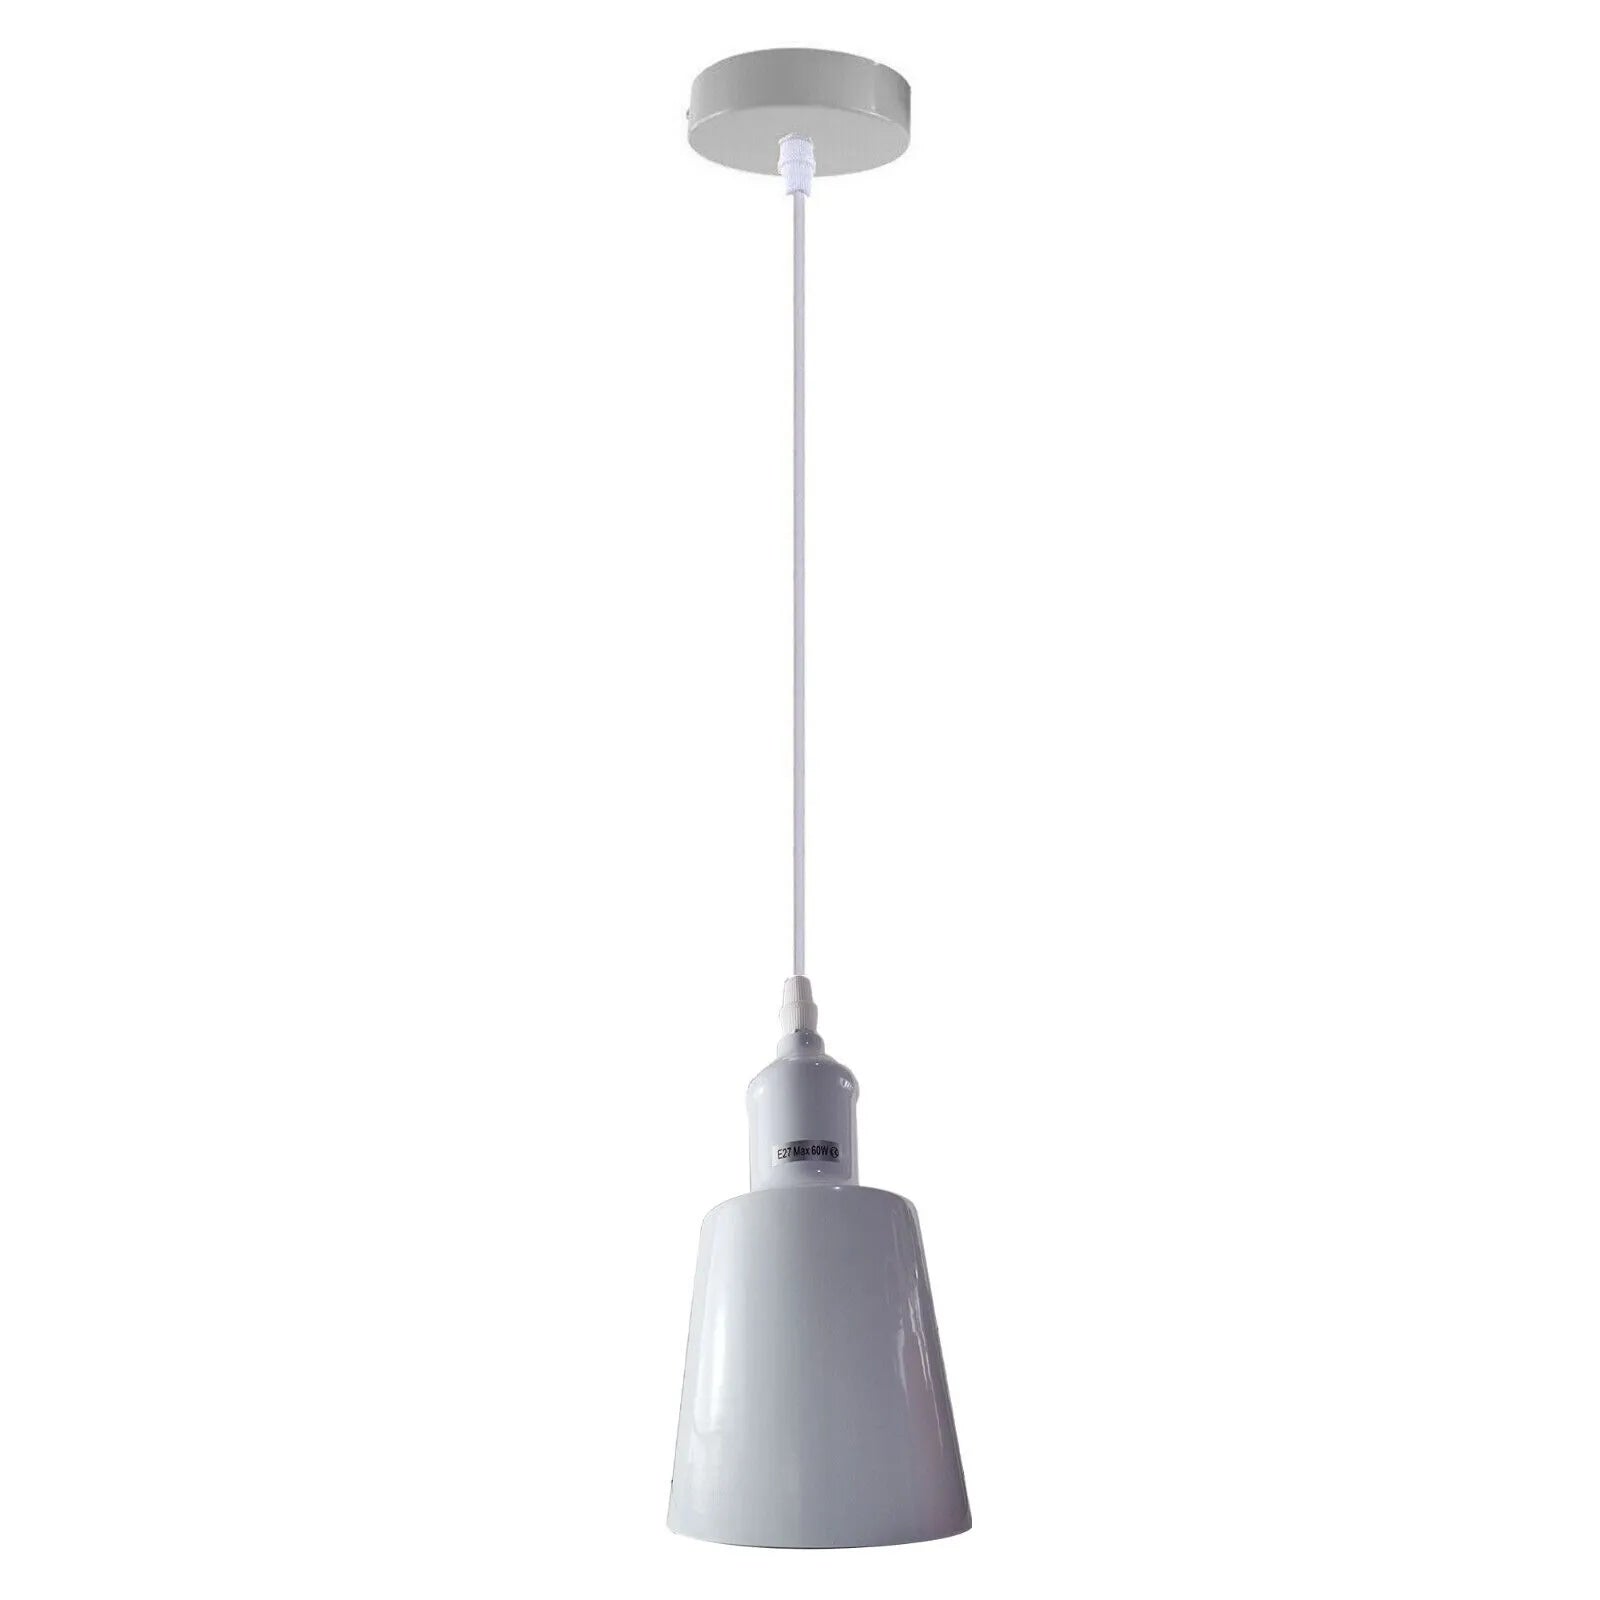 Modern Industrial Ceiling Pendant Light E27 Base Ceiling Lighting fixture ~4321